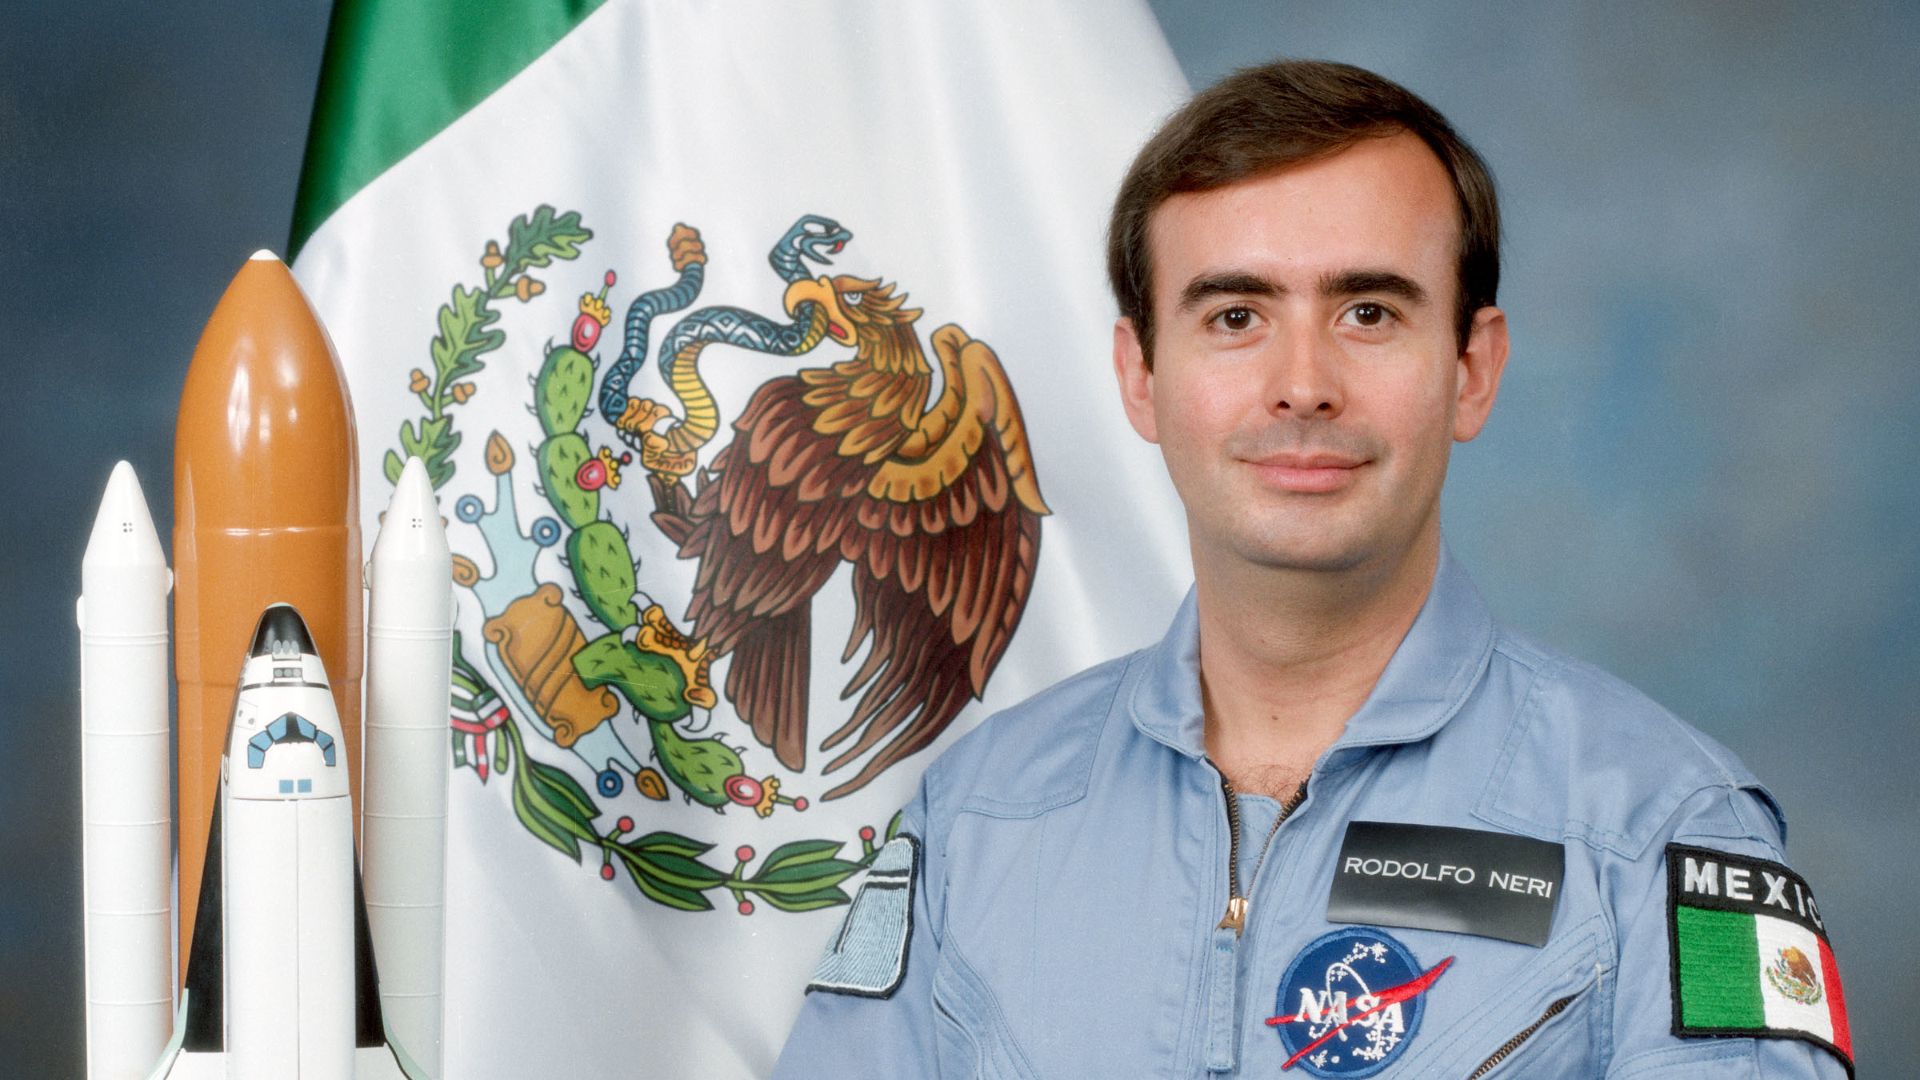 Suspenso, tensión y la inmensidad del Universo: cómo Rodolfo Neri se  convirtió en el primer mexicano en ir al espacio con la NASA - Infobae